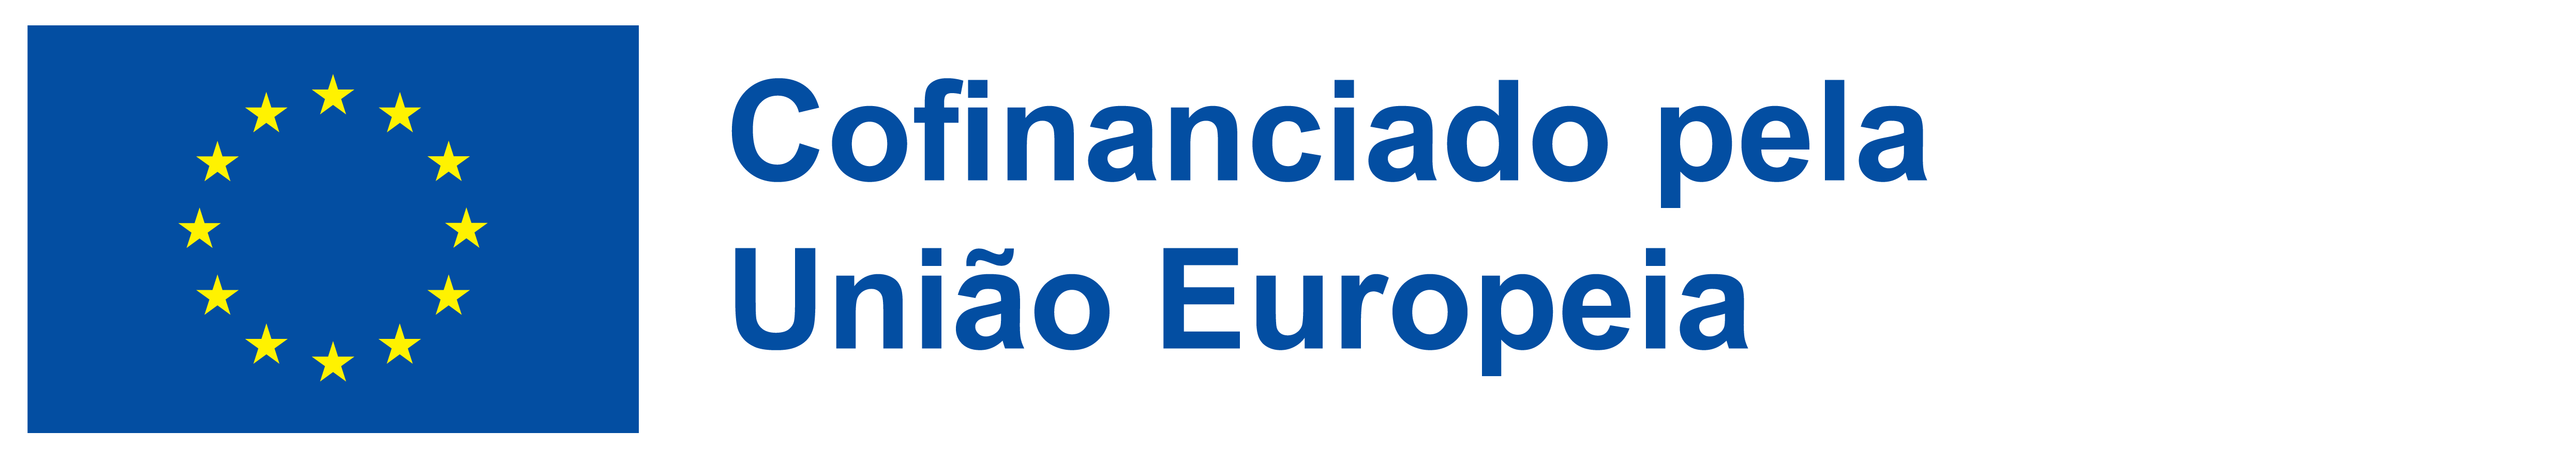 Logo_Projetos Cofinanciados pela União Europeia